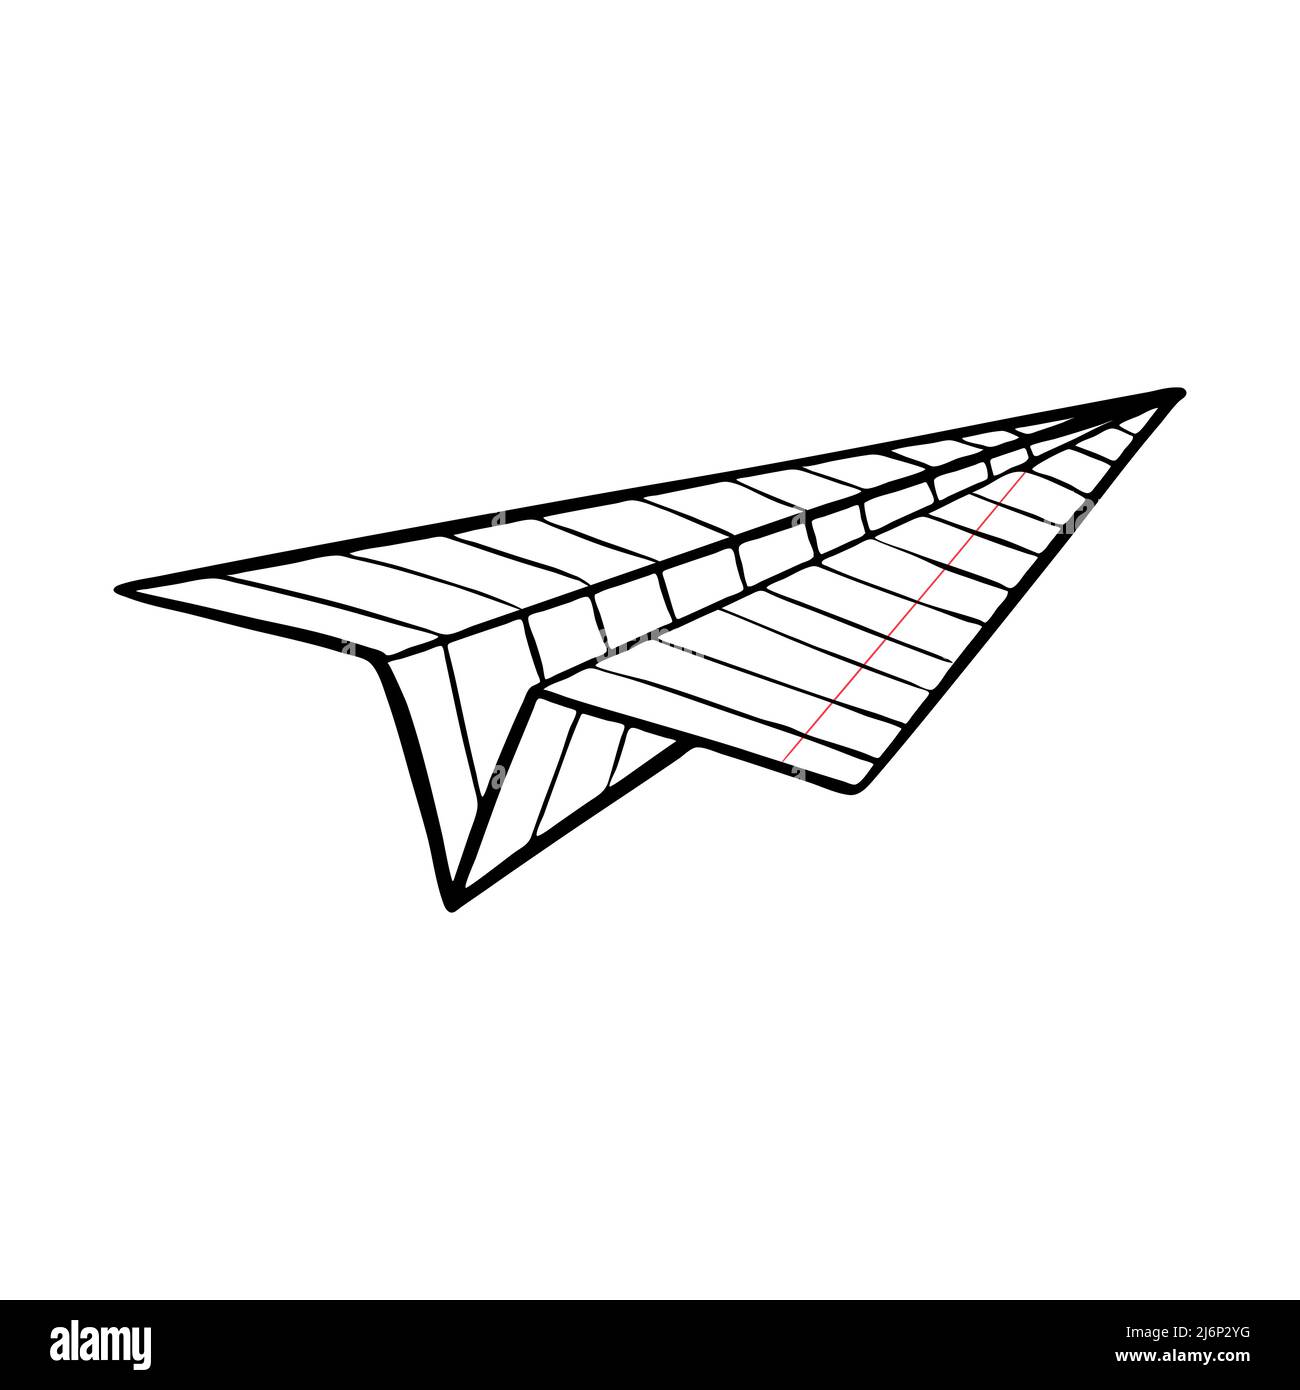 Aeroplano da un foglio del taccuino. Origami, artigianato della carta. Simbolo di movimento, volo, messaggio, notizie. Divertimento scolastico. Lo schizzo è disegnato a mano. Ve bianco-nero Illustrazione Vettoriale